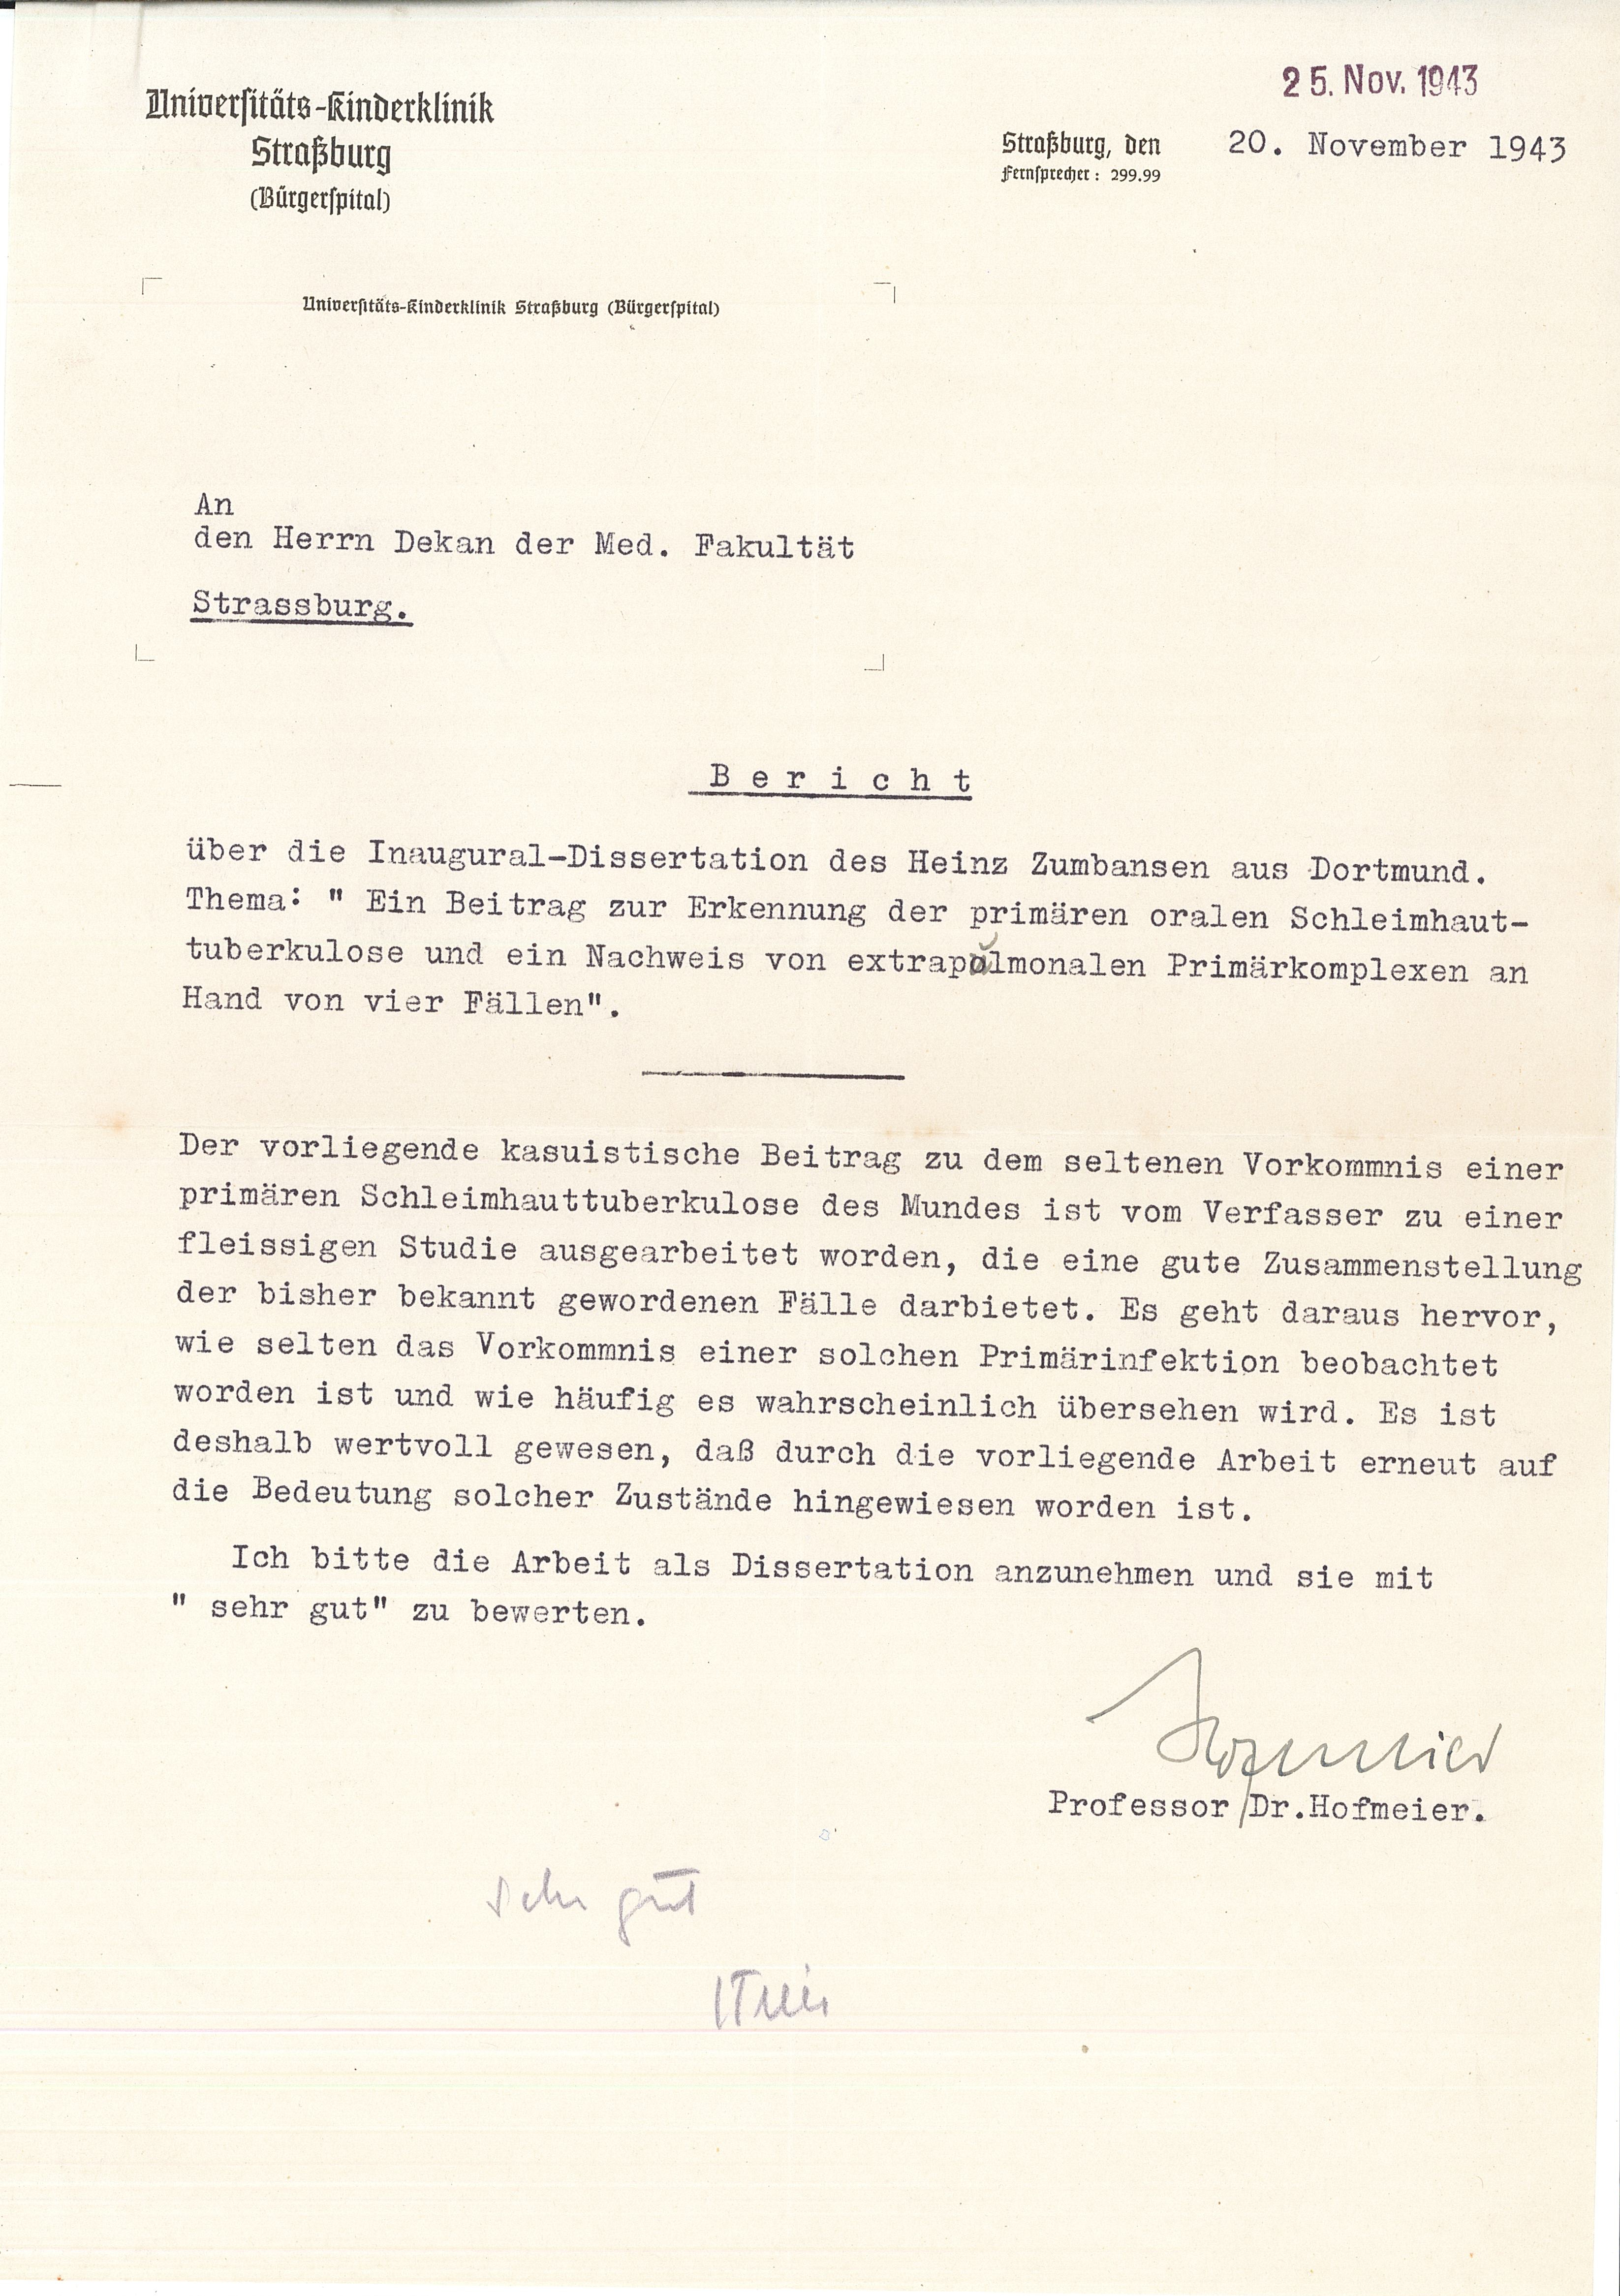 Rapport d'évaluation du manuscrit de la thèse de Zumbansen rédigé par le professeur Hofmeier, 20 novembre 1943.